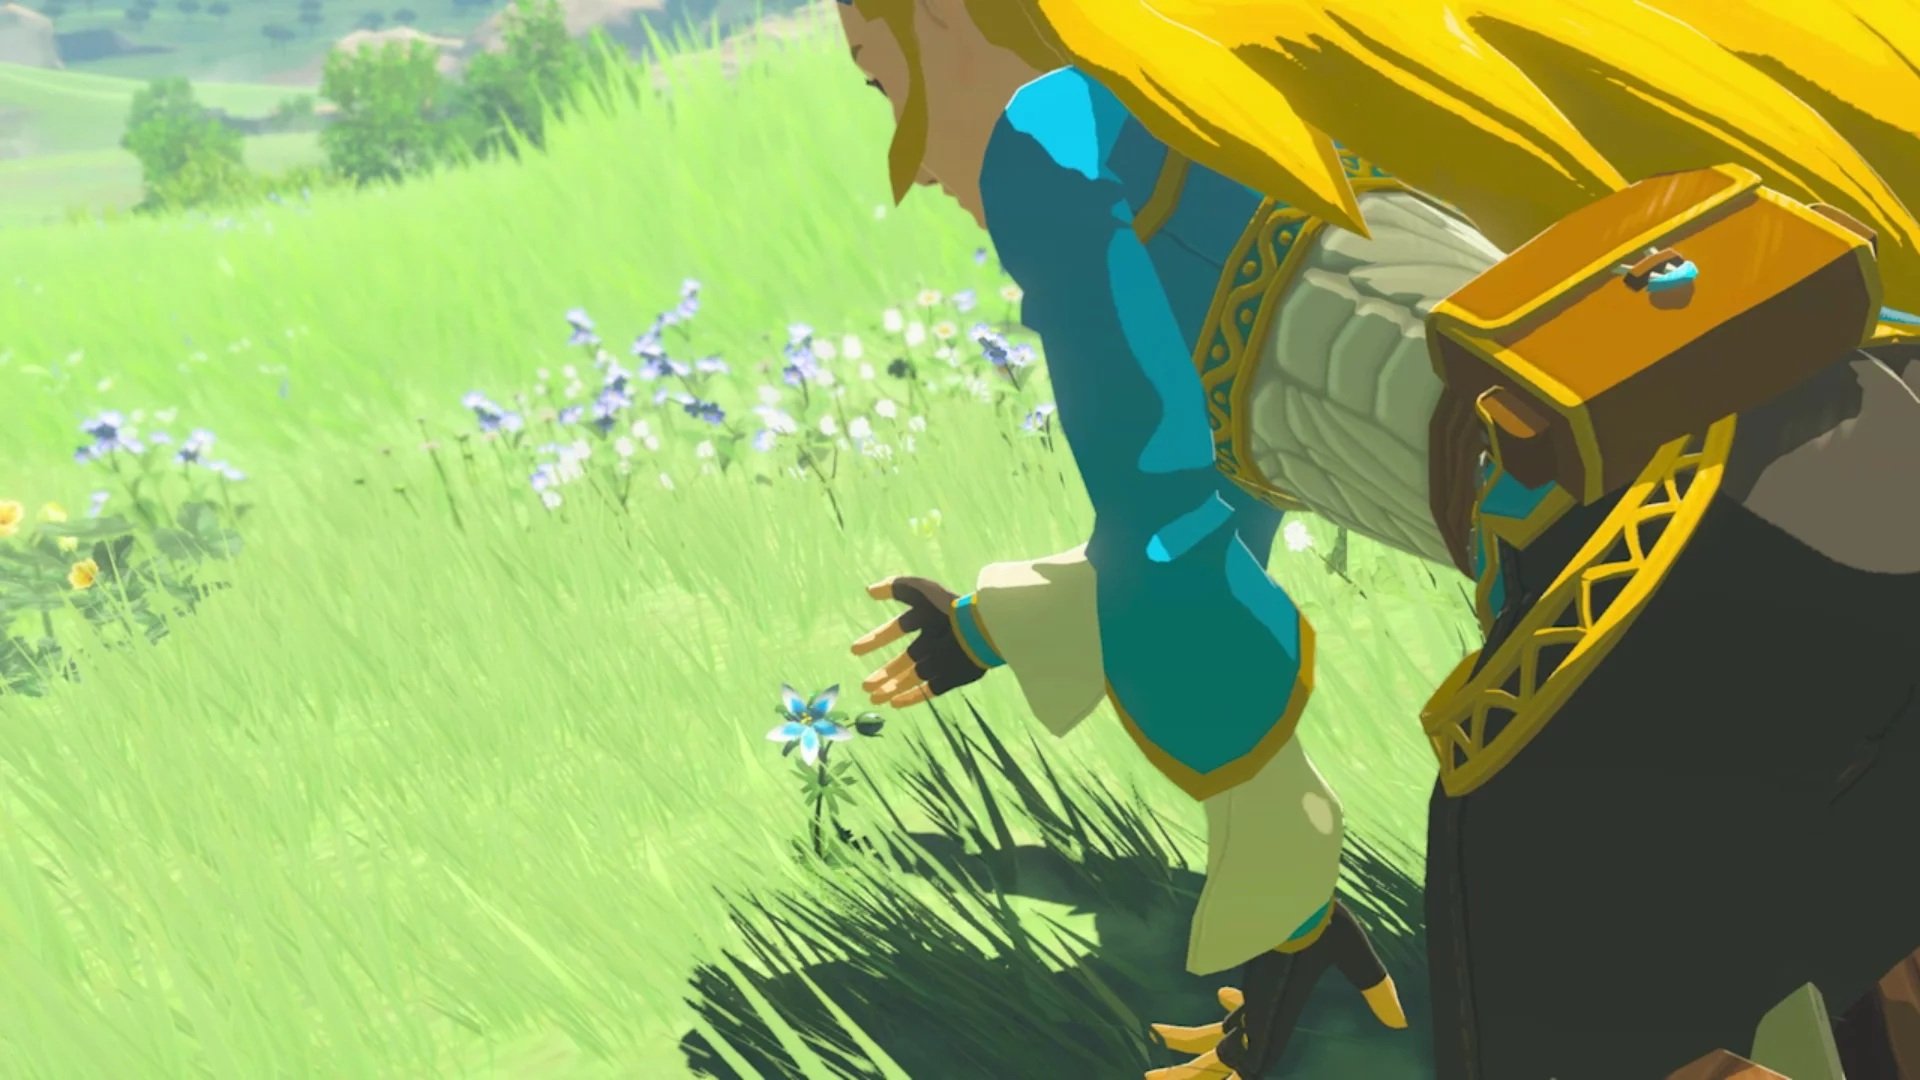 Zelda: Breath of the Wild vence prêmio de Melhor Jogo de 2017 no